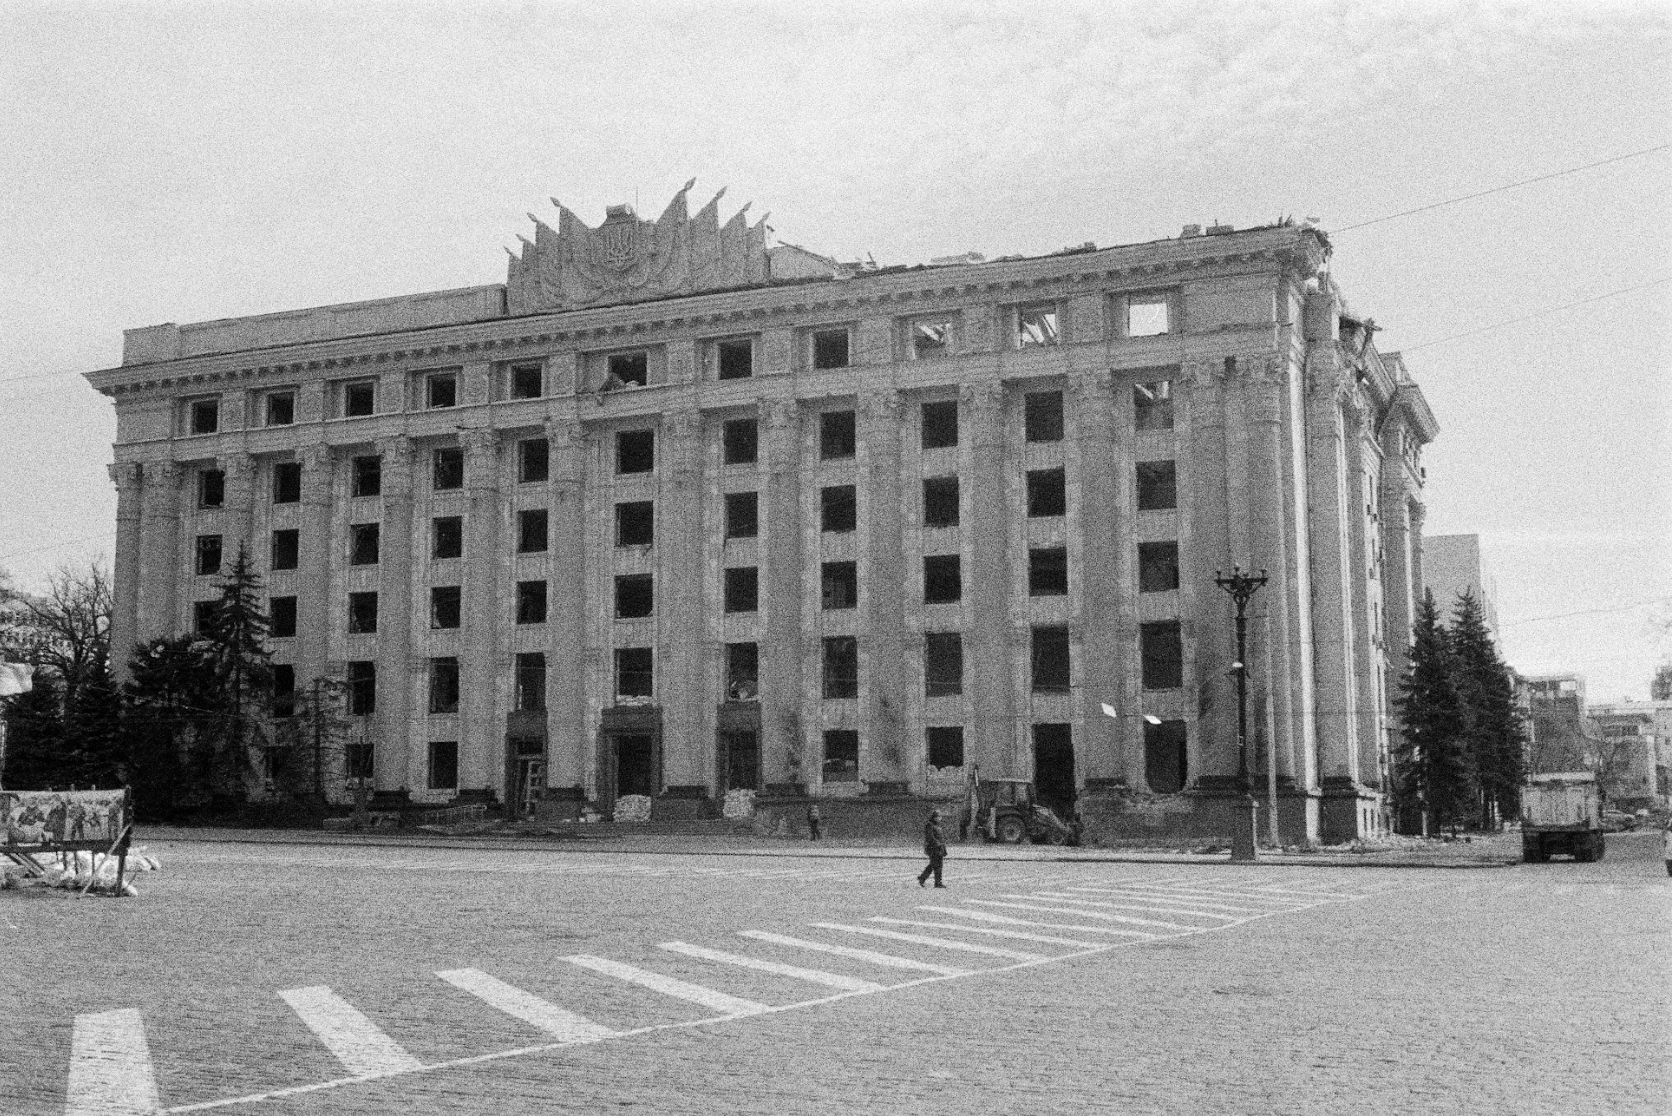 Будівля Харківської облради (облради), частково зруйнована 6&nbsp;березня 2022 року під час ракетного удару, внаслідок якого загинуло 27 людей, березень 2022 року. Фото Станіслава Остроуса.